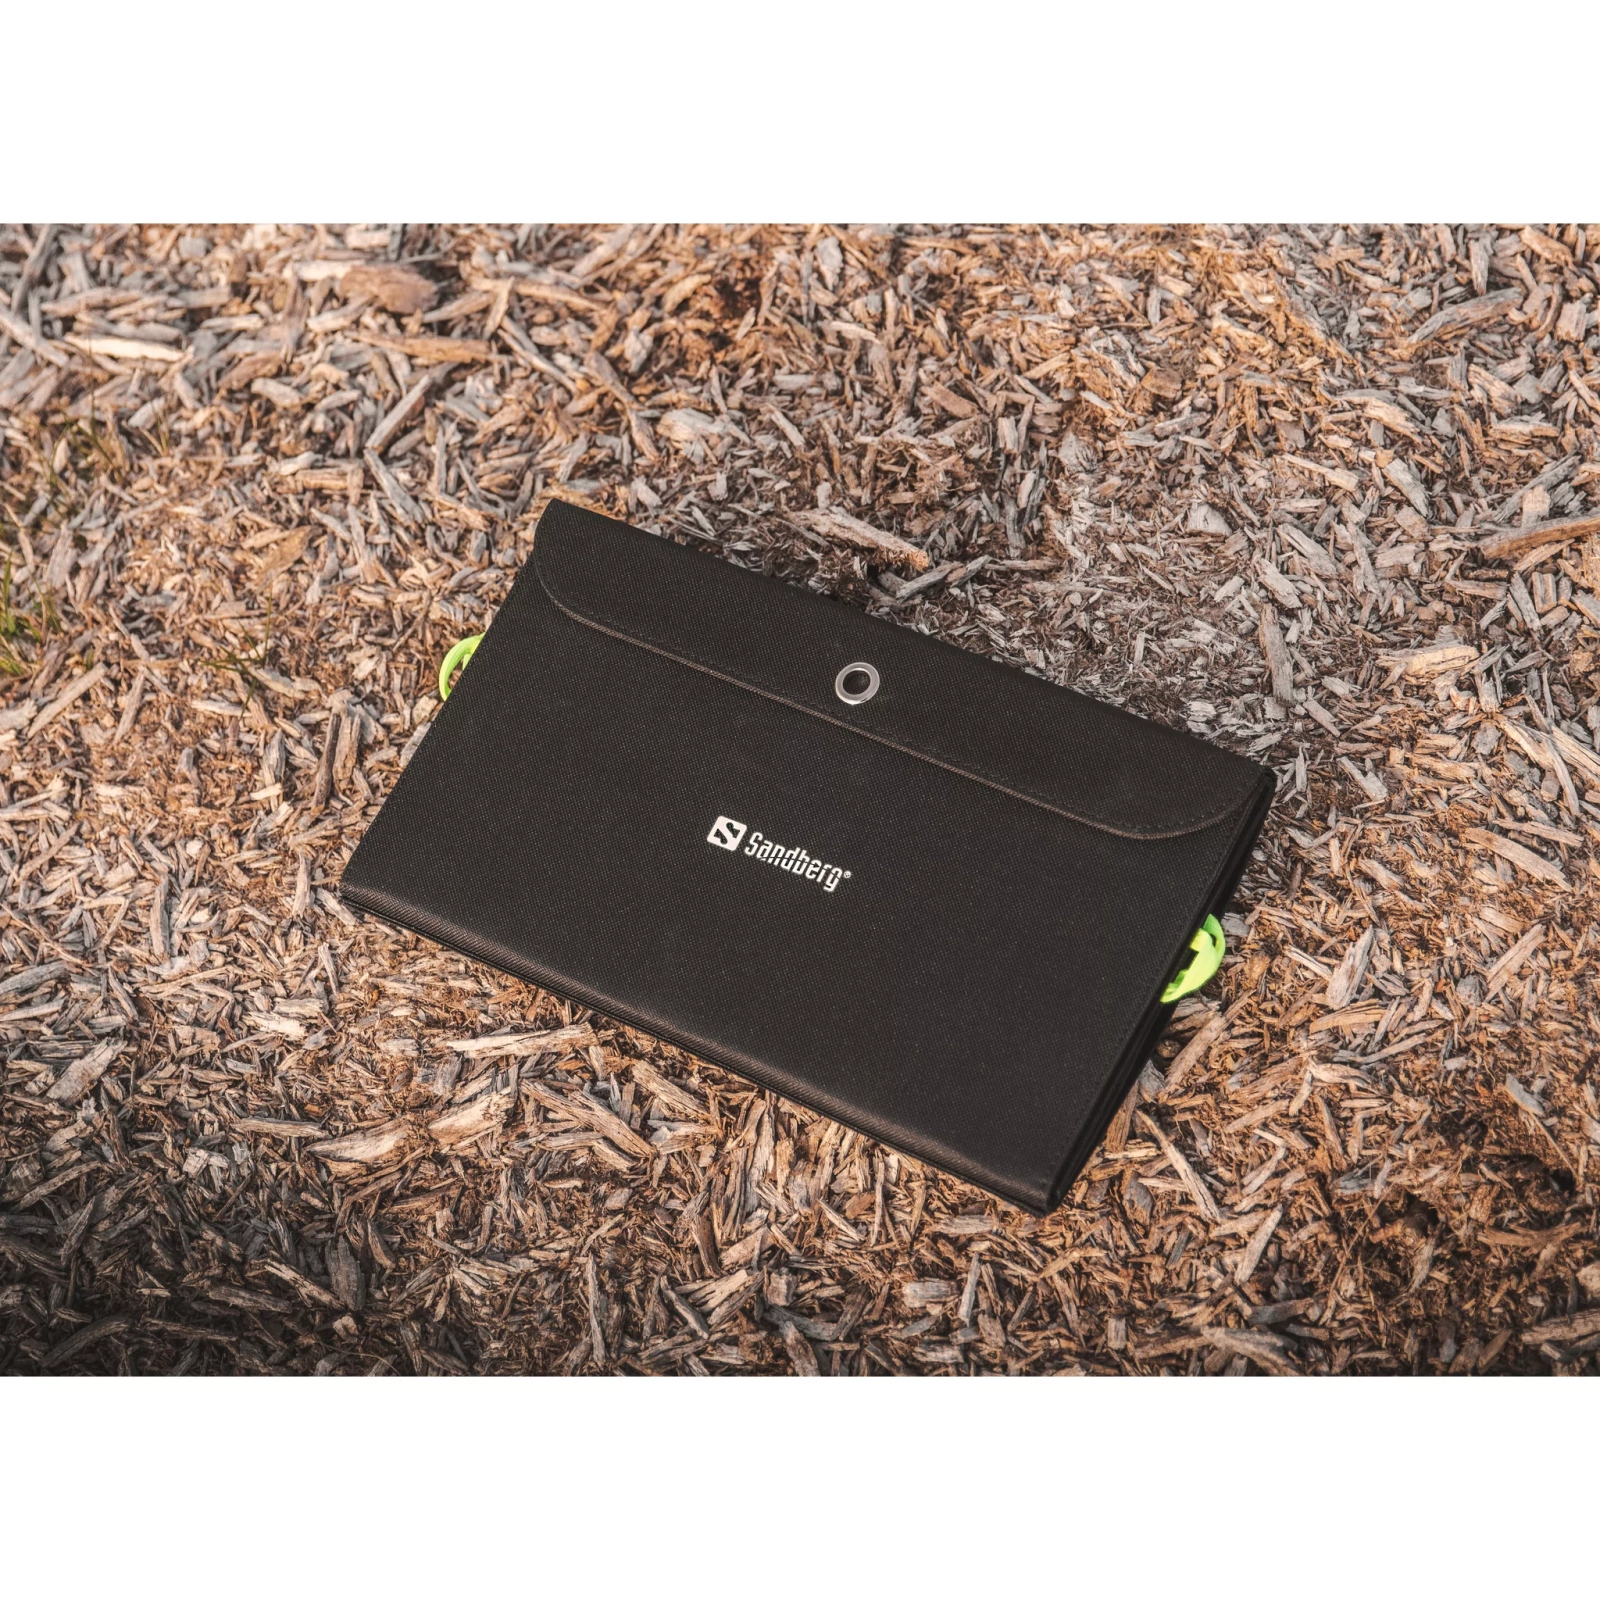 Батарея універсальна Sandberg 10000mAh, Solar Charger 21W, PD/18W, QC/3.0, USB-C, USB-A*2 (420-55) зображення 4